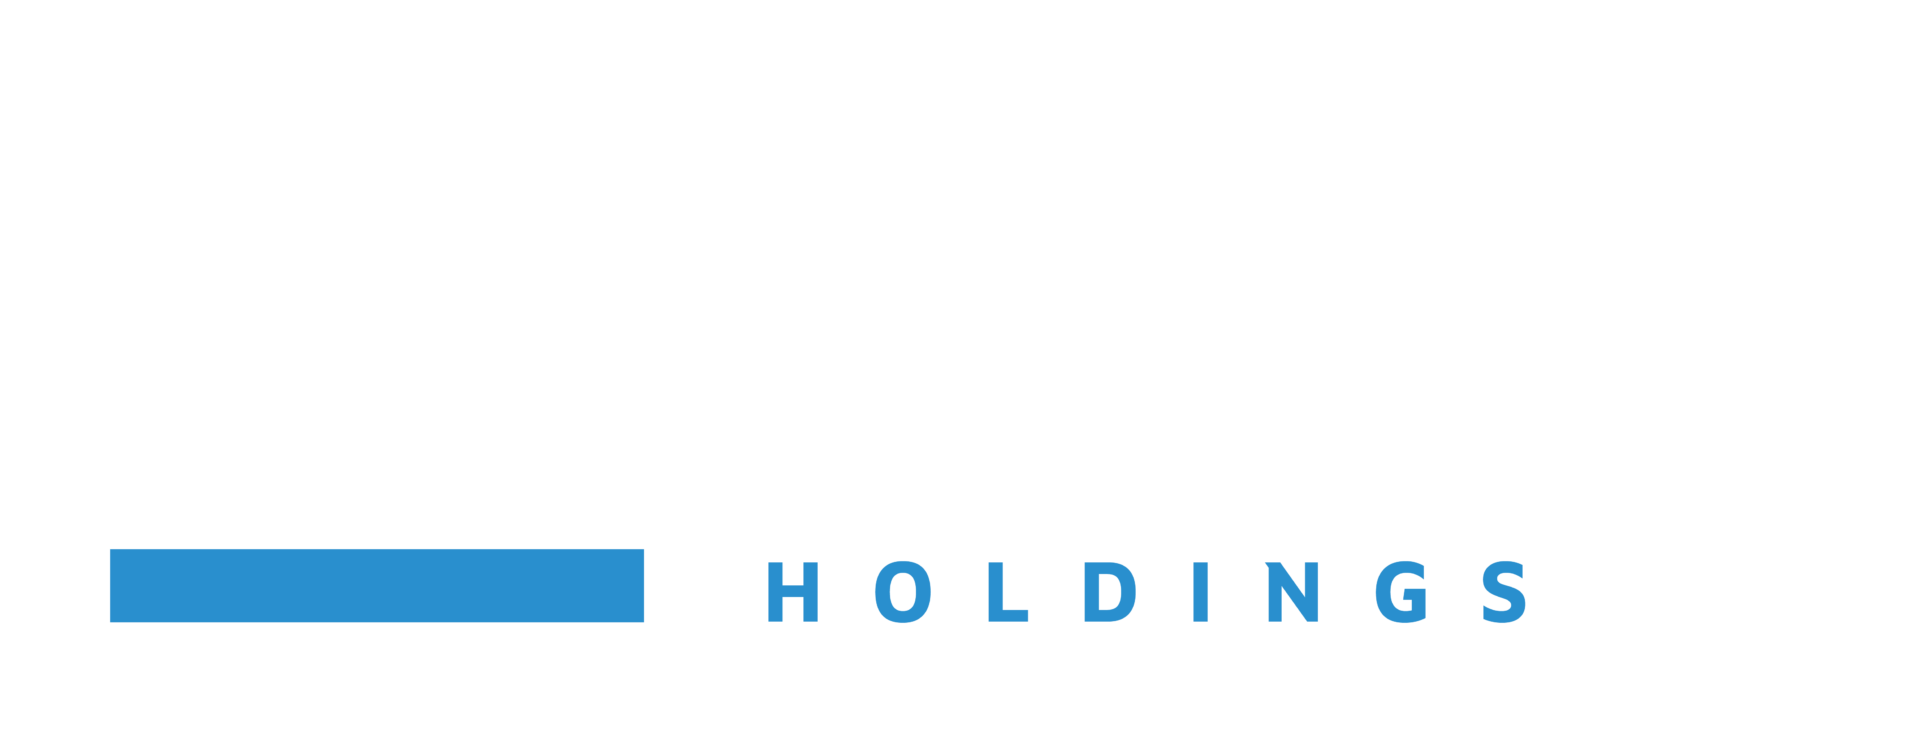 Buffalo Bayou